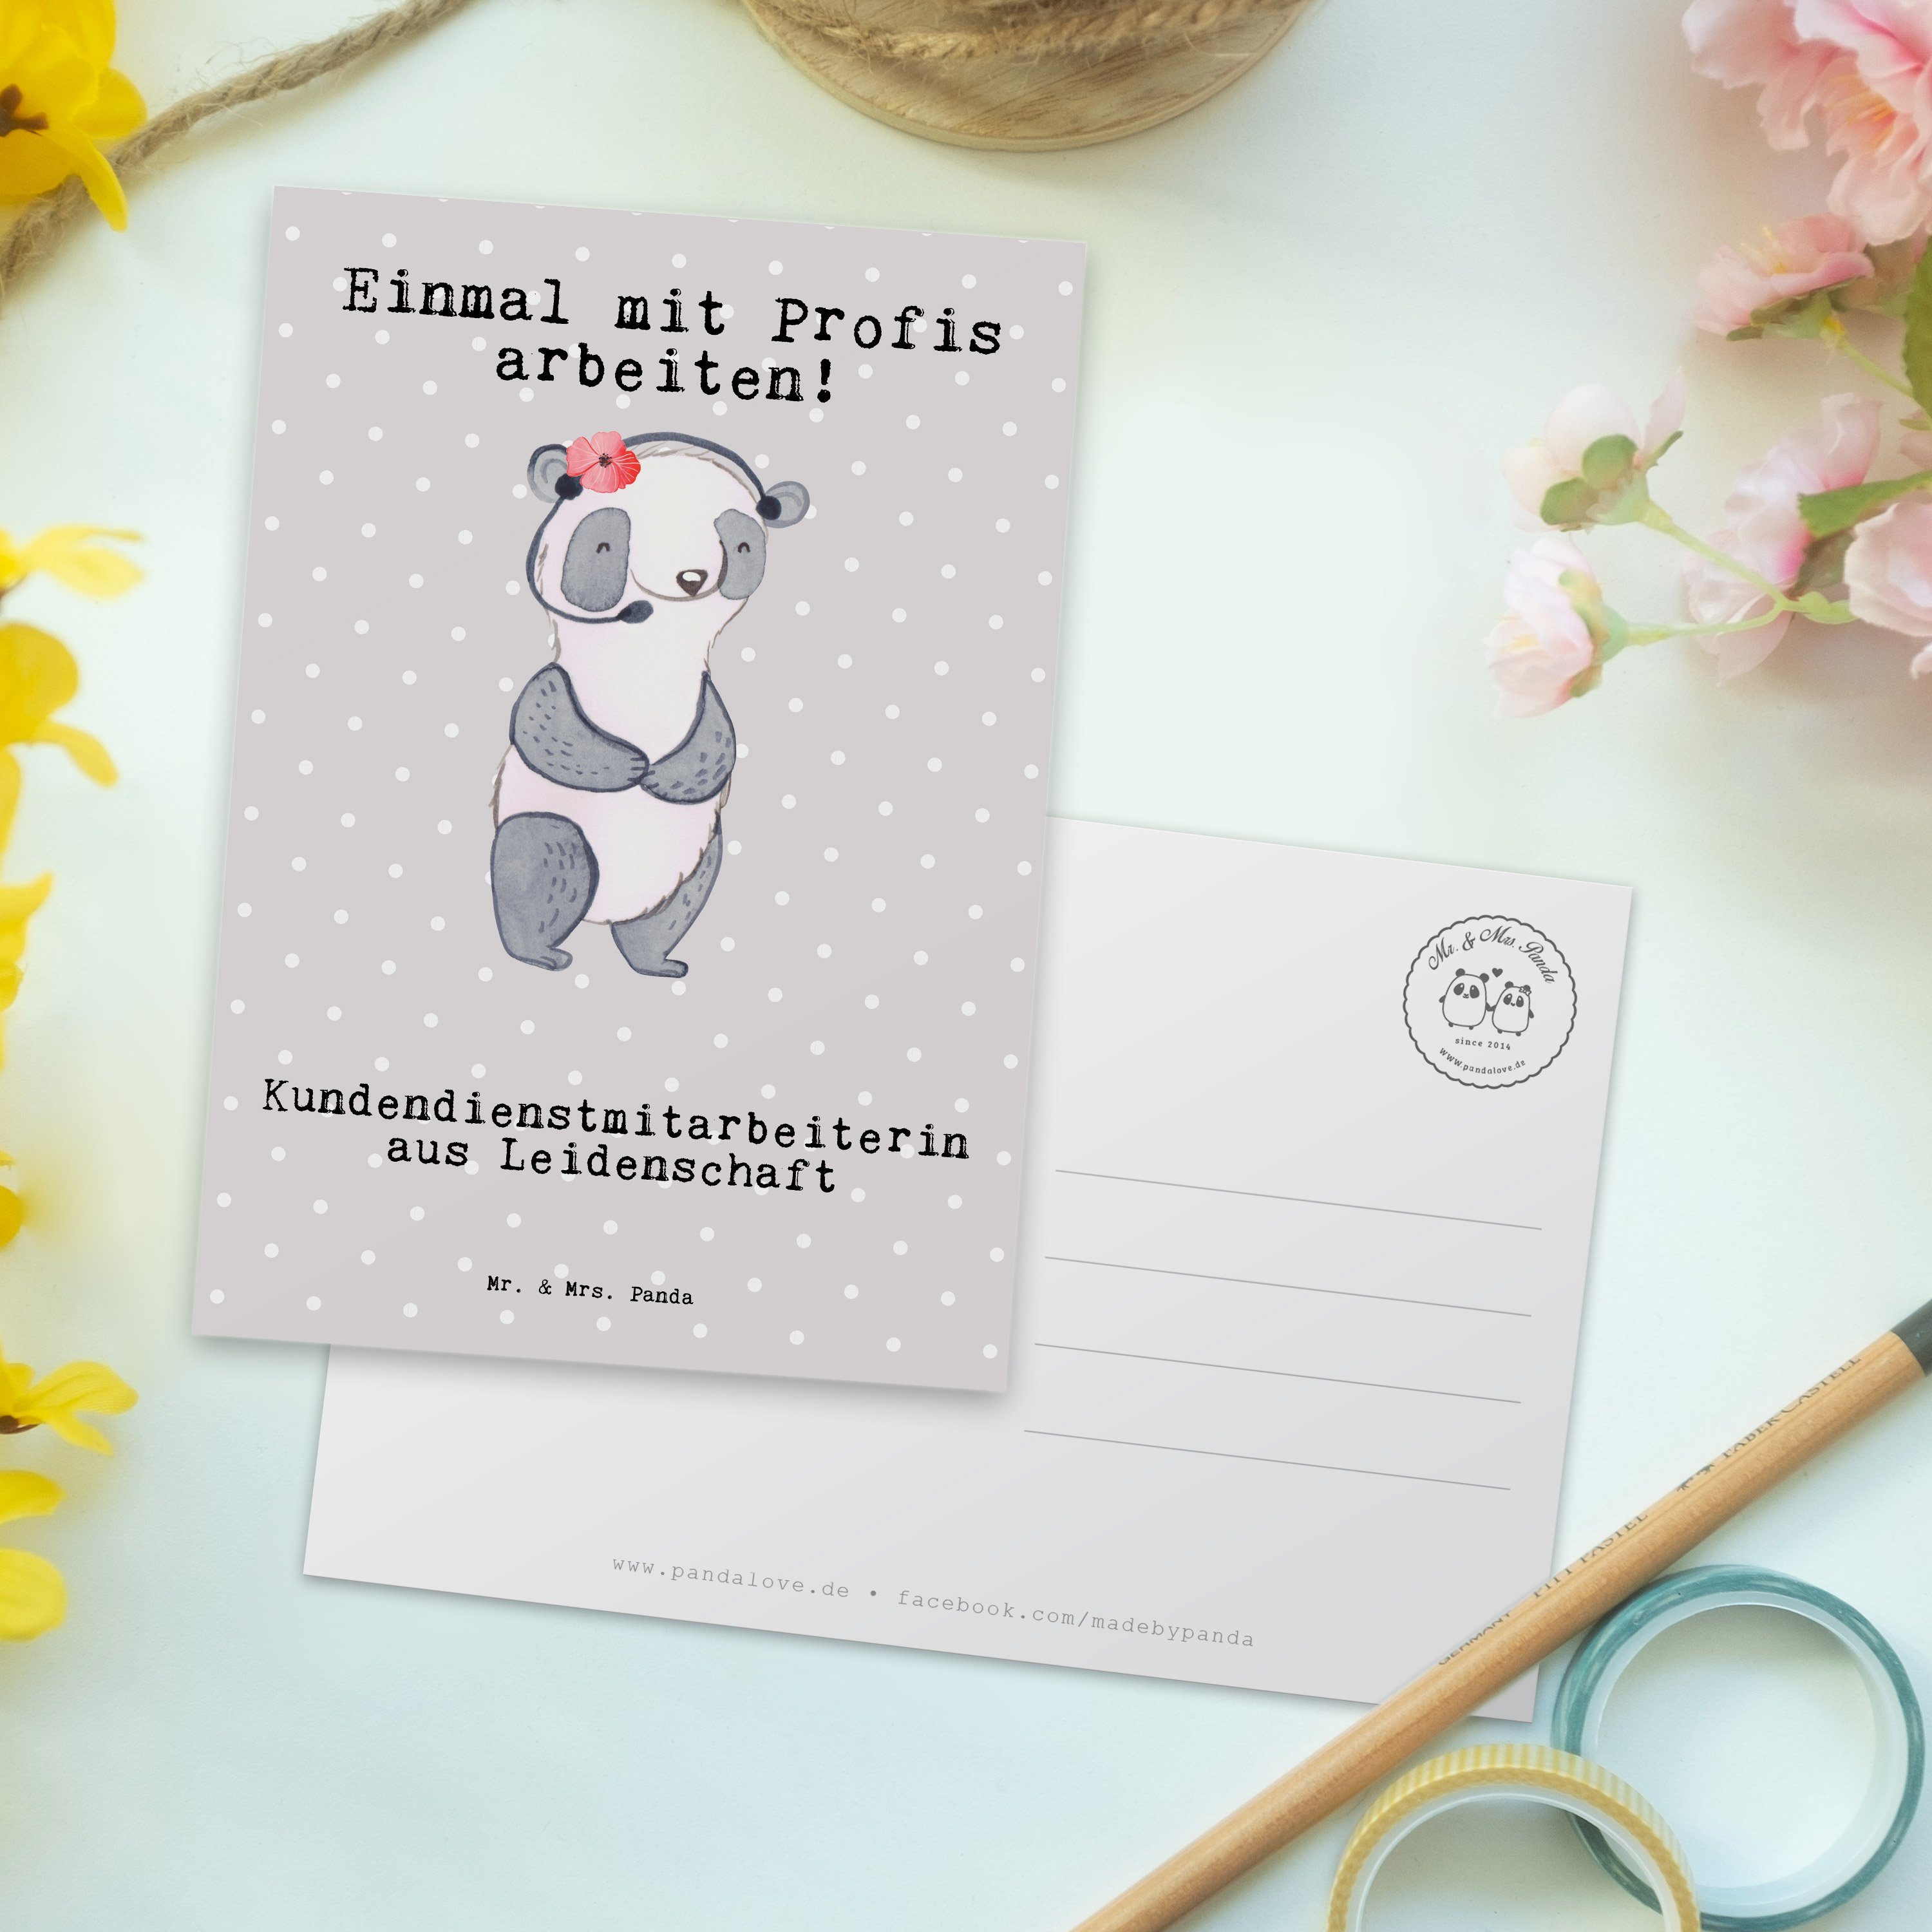 Mr. & Mrs. Panda Postkarte Kundendienstmitarbeiterin aus Leidenschaft - Grau Pastell - Geschenk